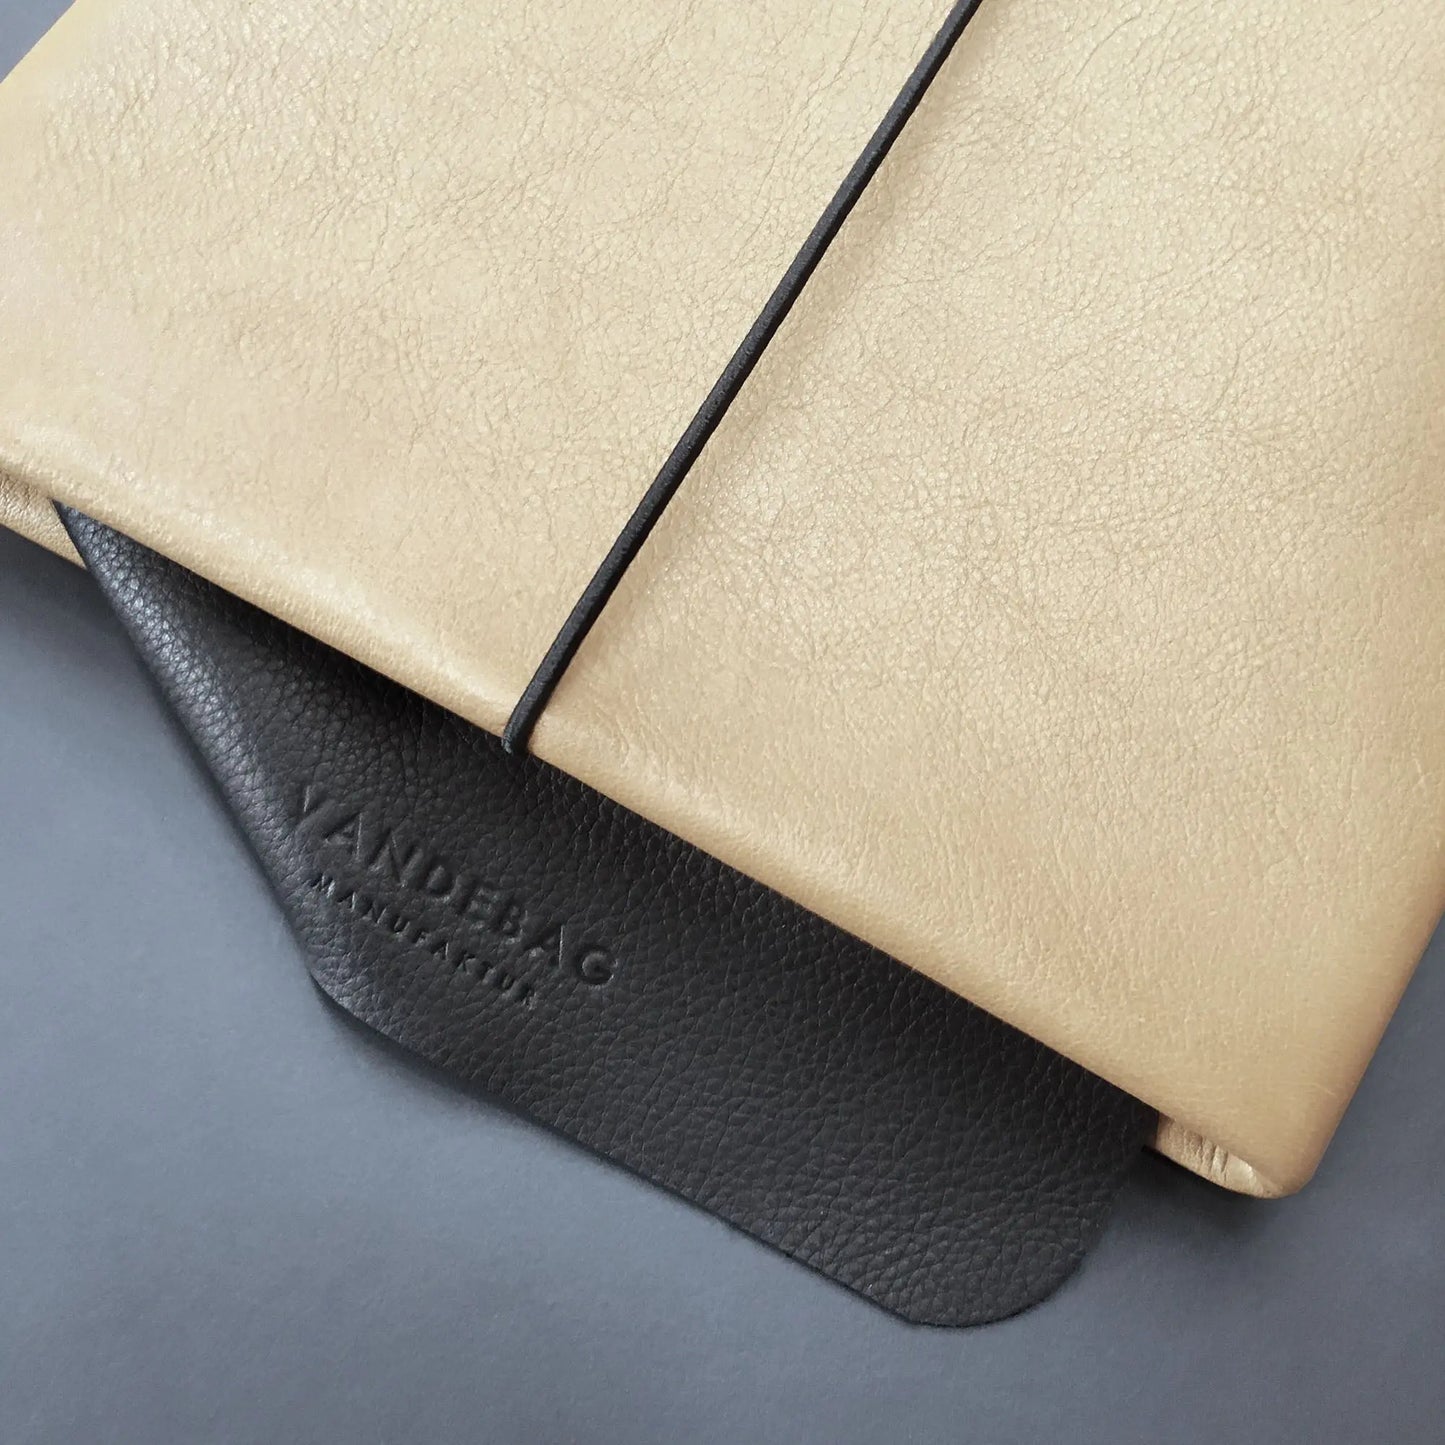 sandfarbene iPad Hülle aus Rindsleder mit Verschlussgummi und schwarzer Lederklappe in die "VANDEBAG Manufaktur" eingeprägt ist.